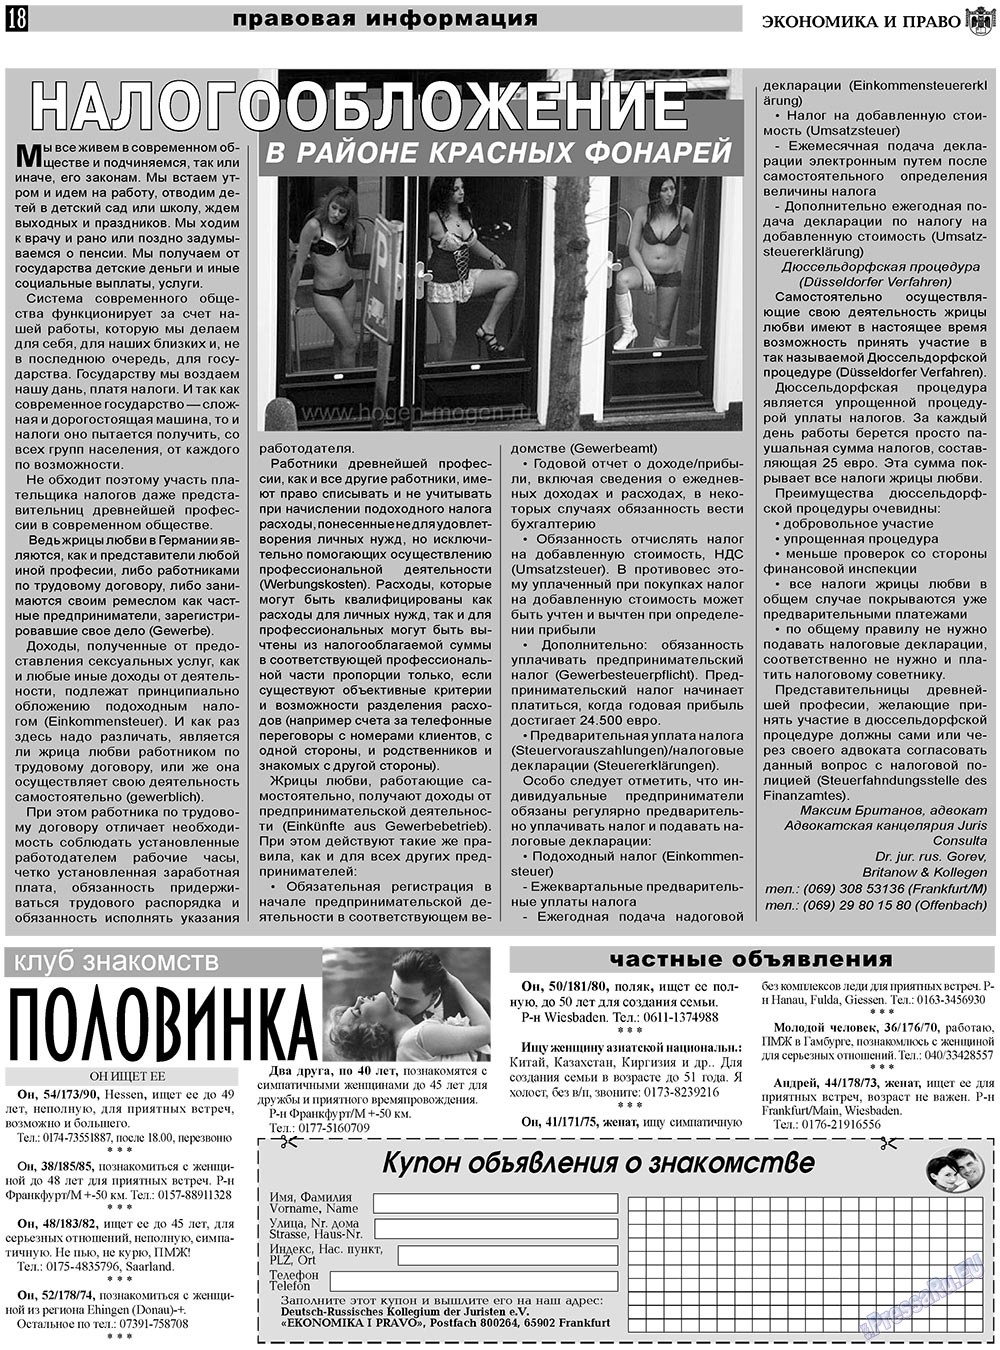 Экономика и право, газета. 2011 №2 стр.18